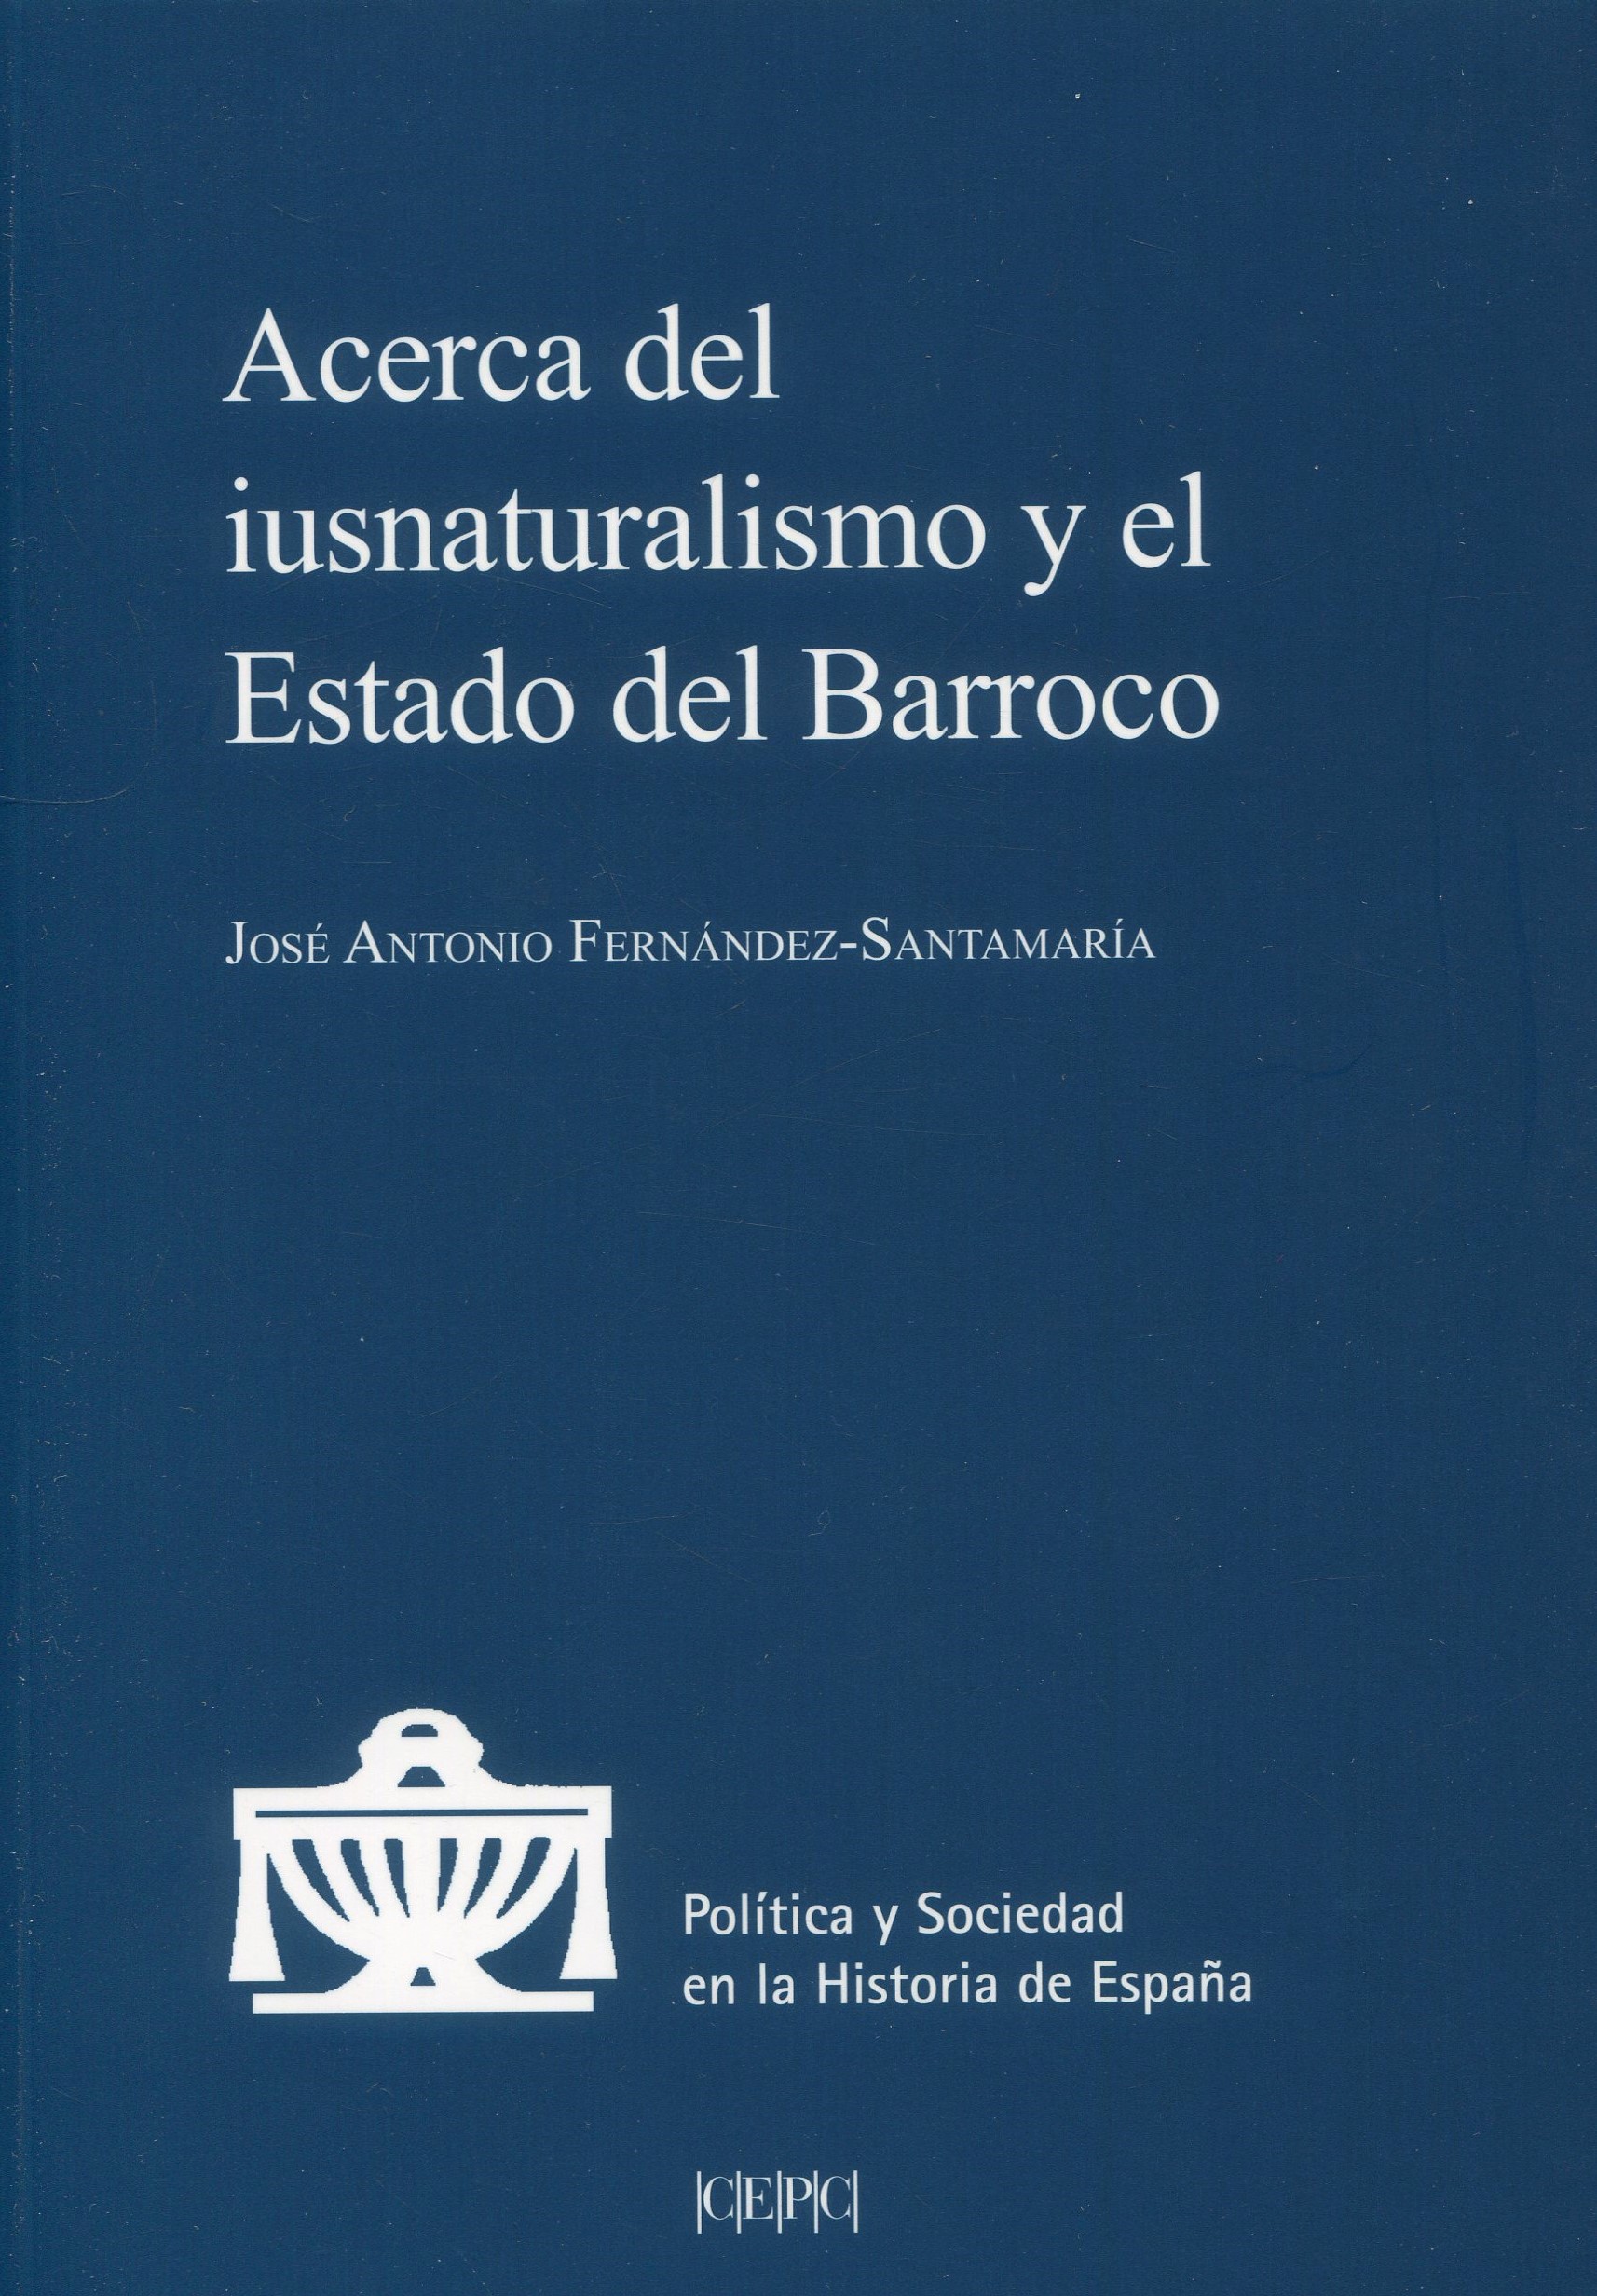 Acerca del iusnaturalismo y el Estado del Barroco. 9788425919749